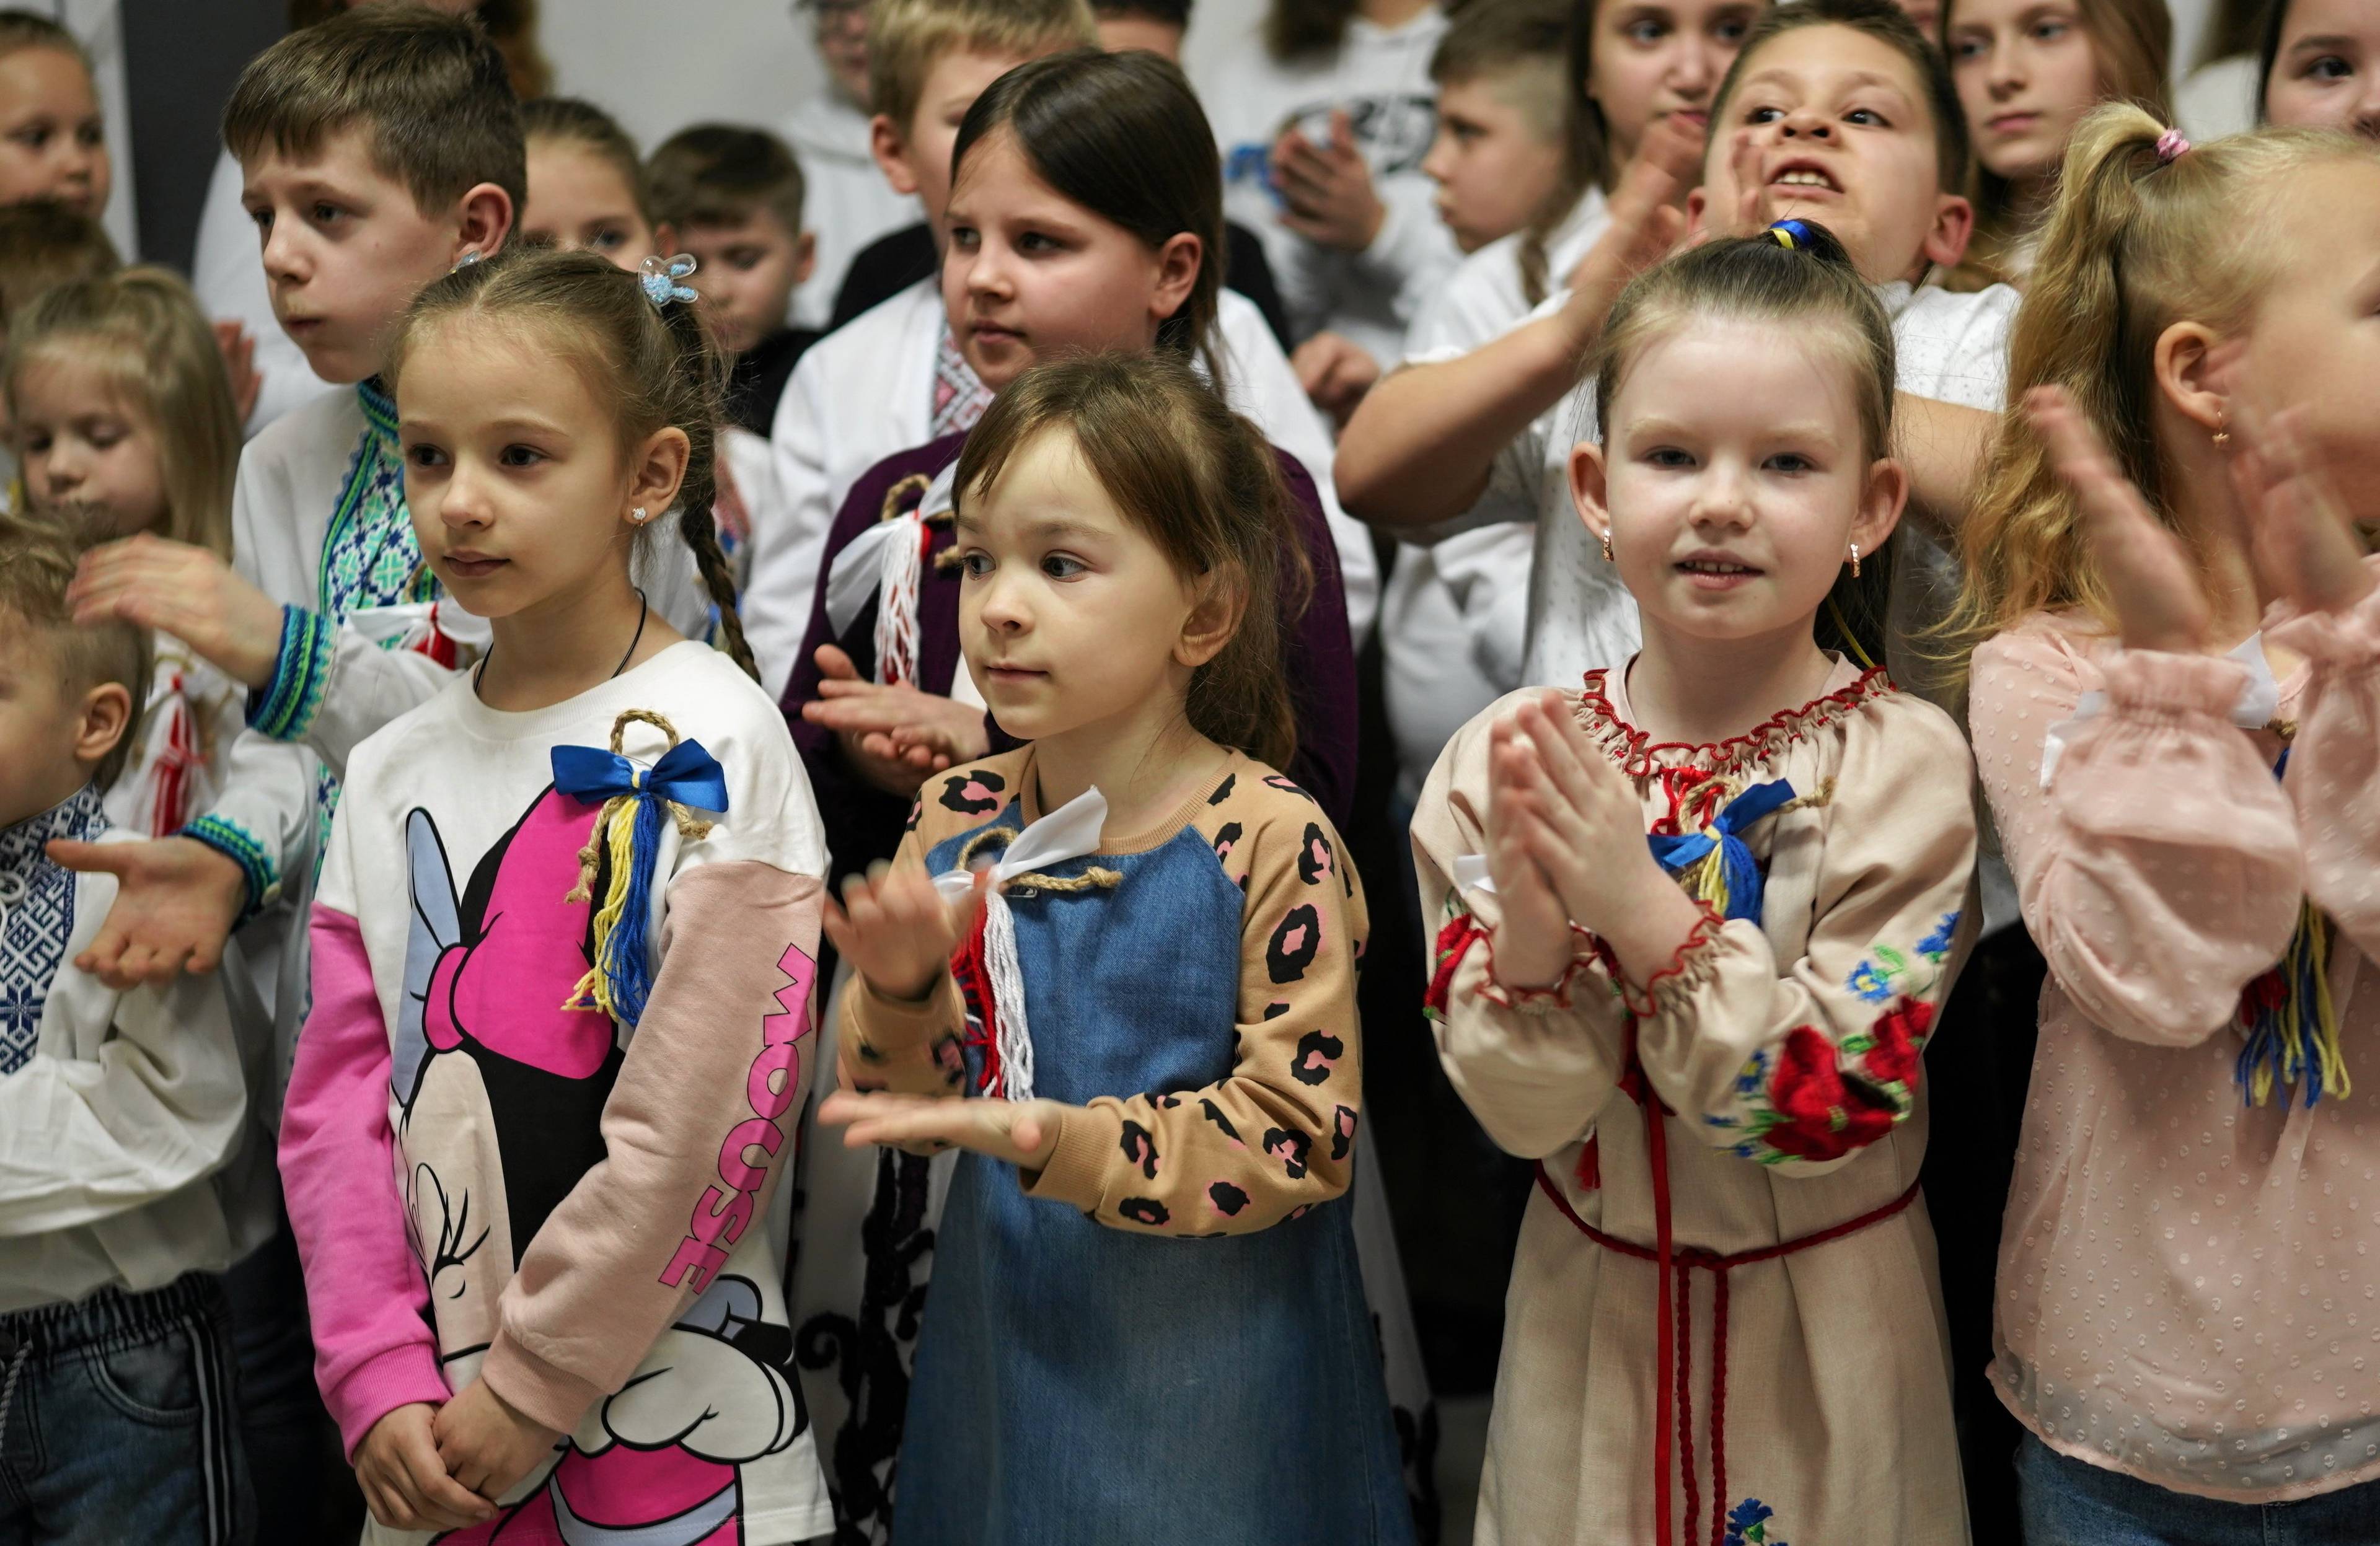 Na zdjęciu widać dzieci ukraińskie w wieku 6-10 lat. Niektóre z nich są w tradycyjnych koszulach wyszywanych